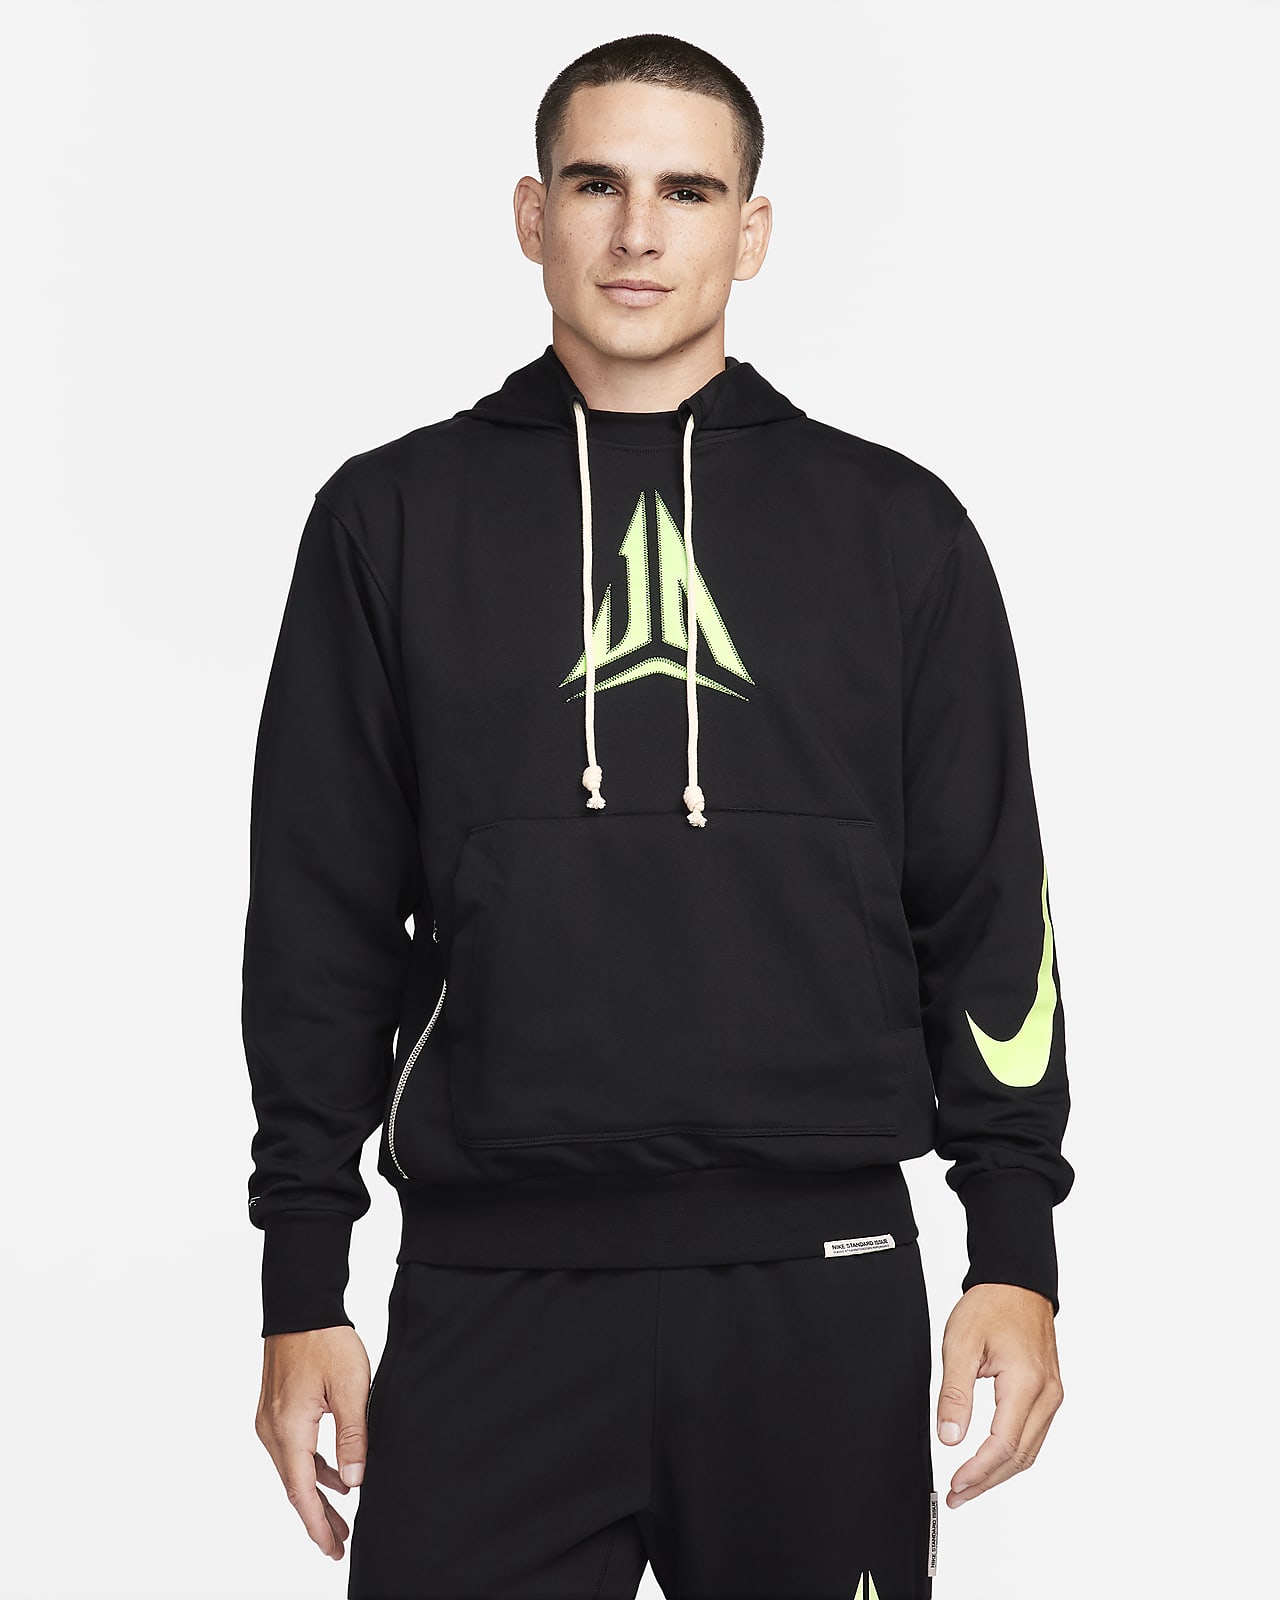 U.S. Standard Issue Men's Nike Pullover Hoodie.